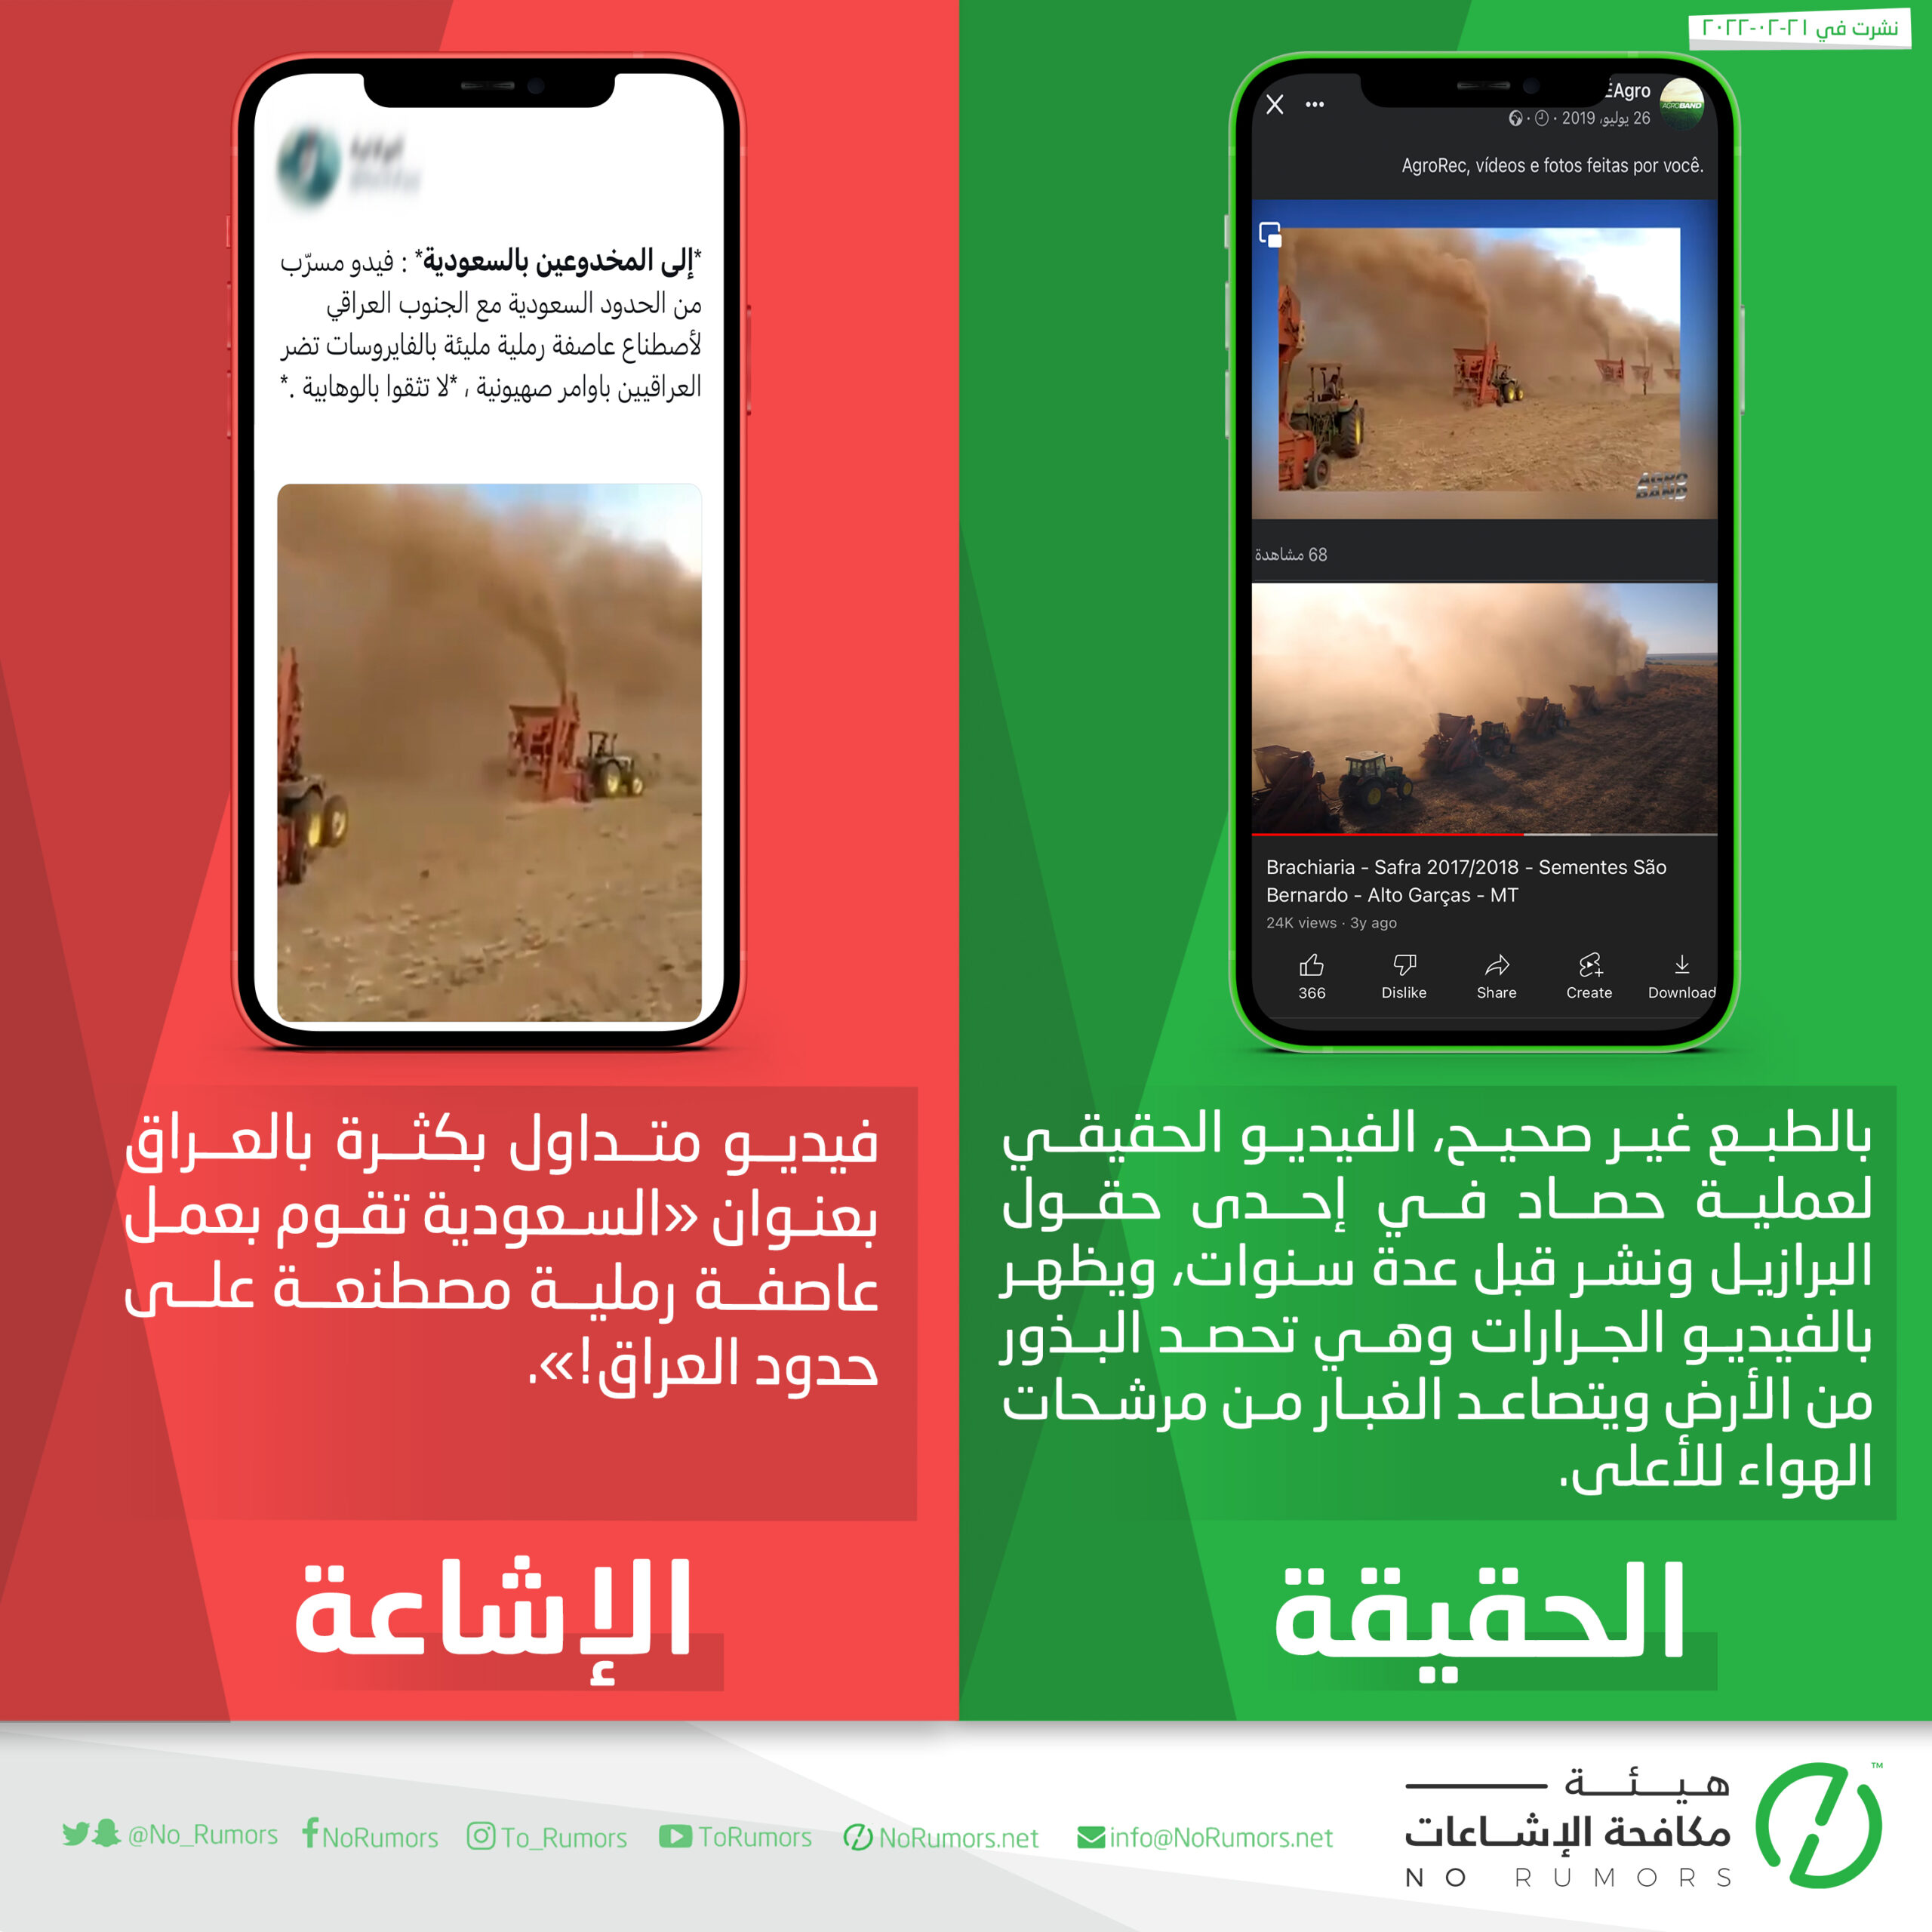 حقيقة الفيديو بعنوان “السعودية تقوم بعمل عاصفة رملية مصطنعة على حدود العراق”